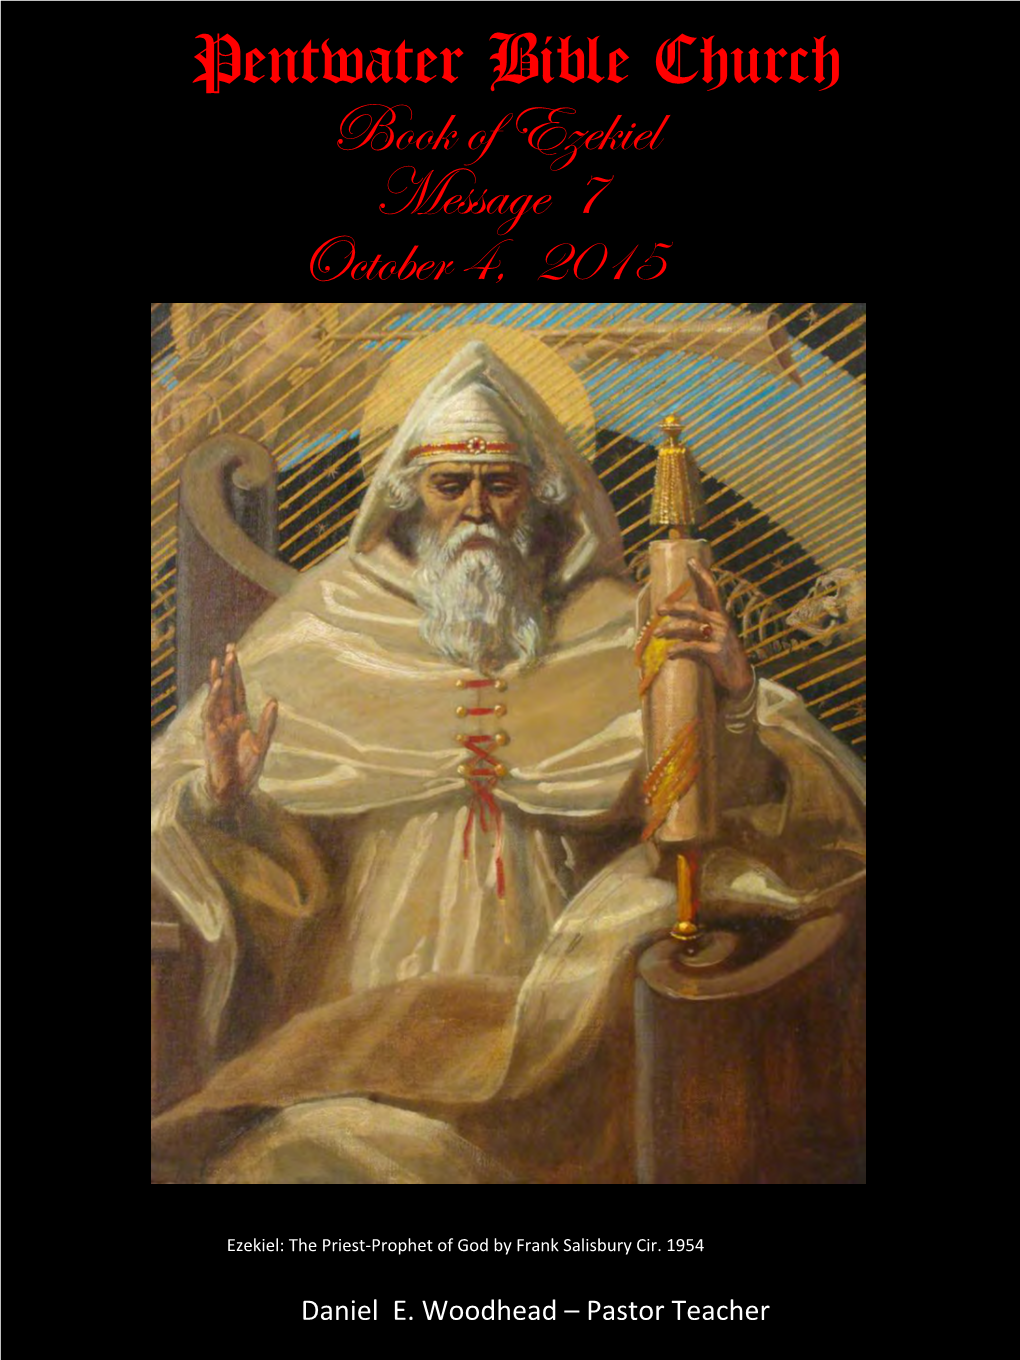 Book of Ezekiel Message 7 October 4, 2015